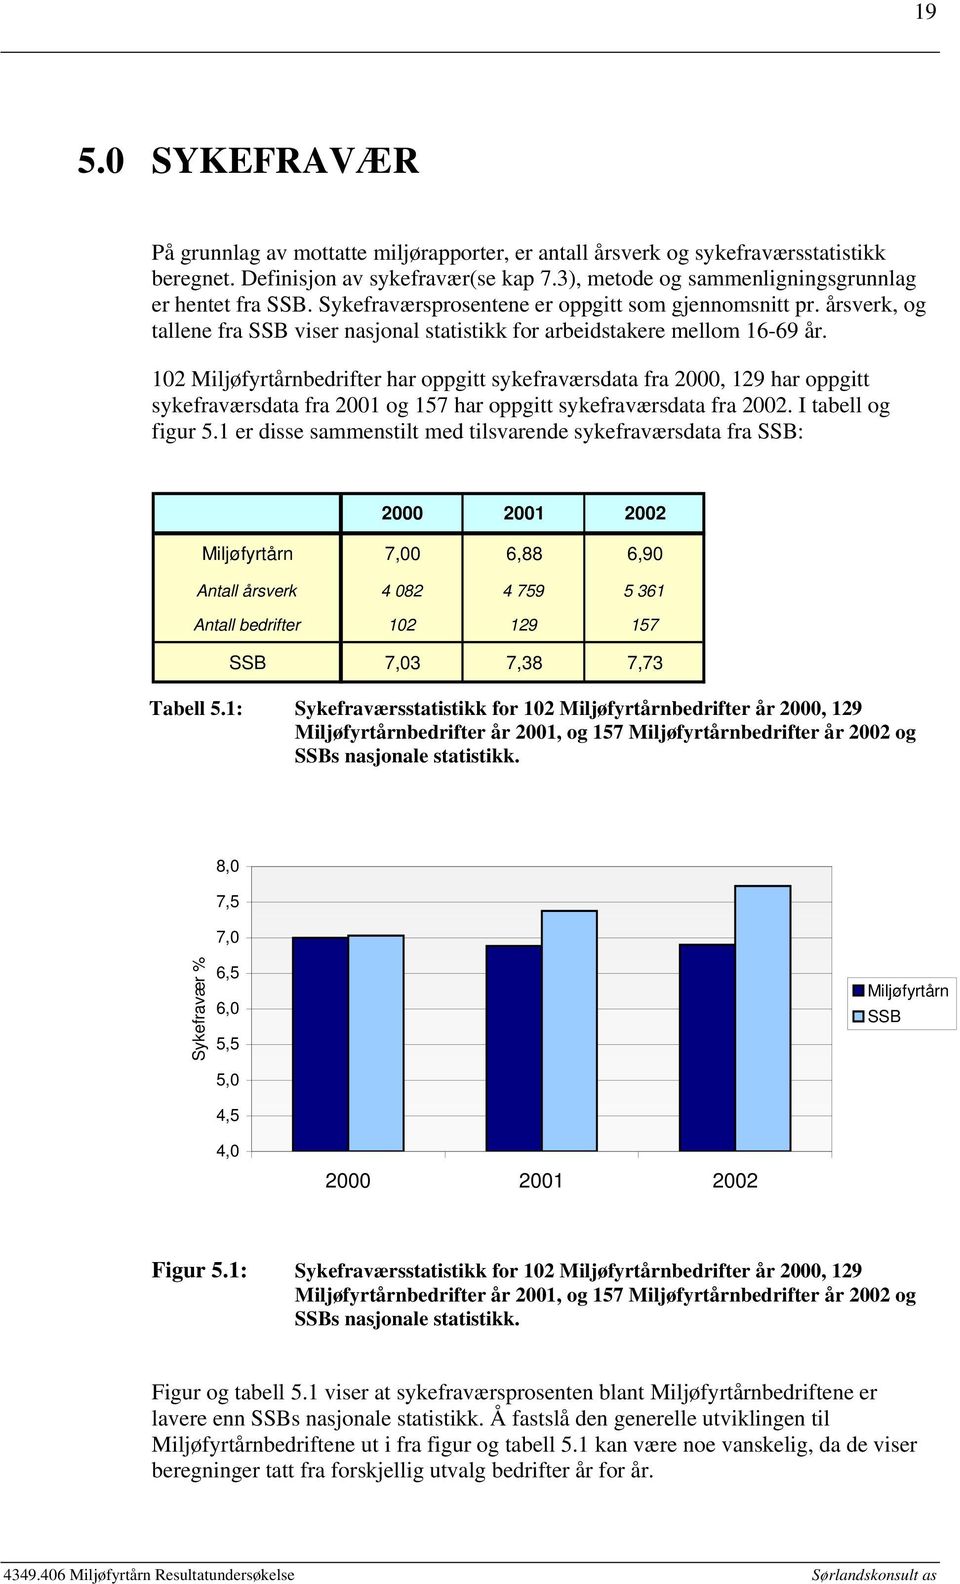 102 Miljøfyrtårnbedrifter har oppgitt sykefraværsdata fra 2000, 129 har oppgitt sykefraværsdata fra 2001 og 157 har oppgitt sykefraværsdata fra 2002. I tabell og figur 5.